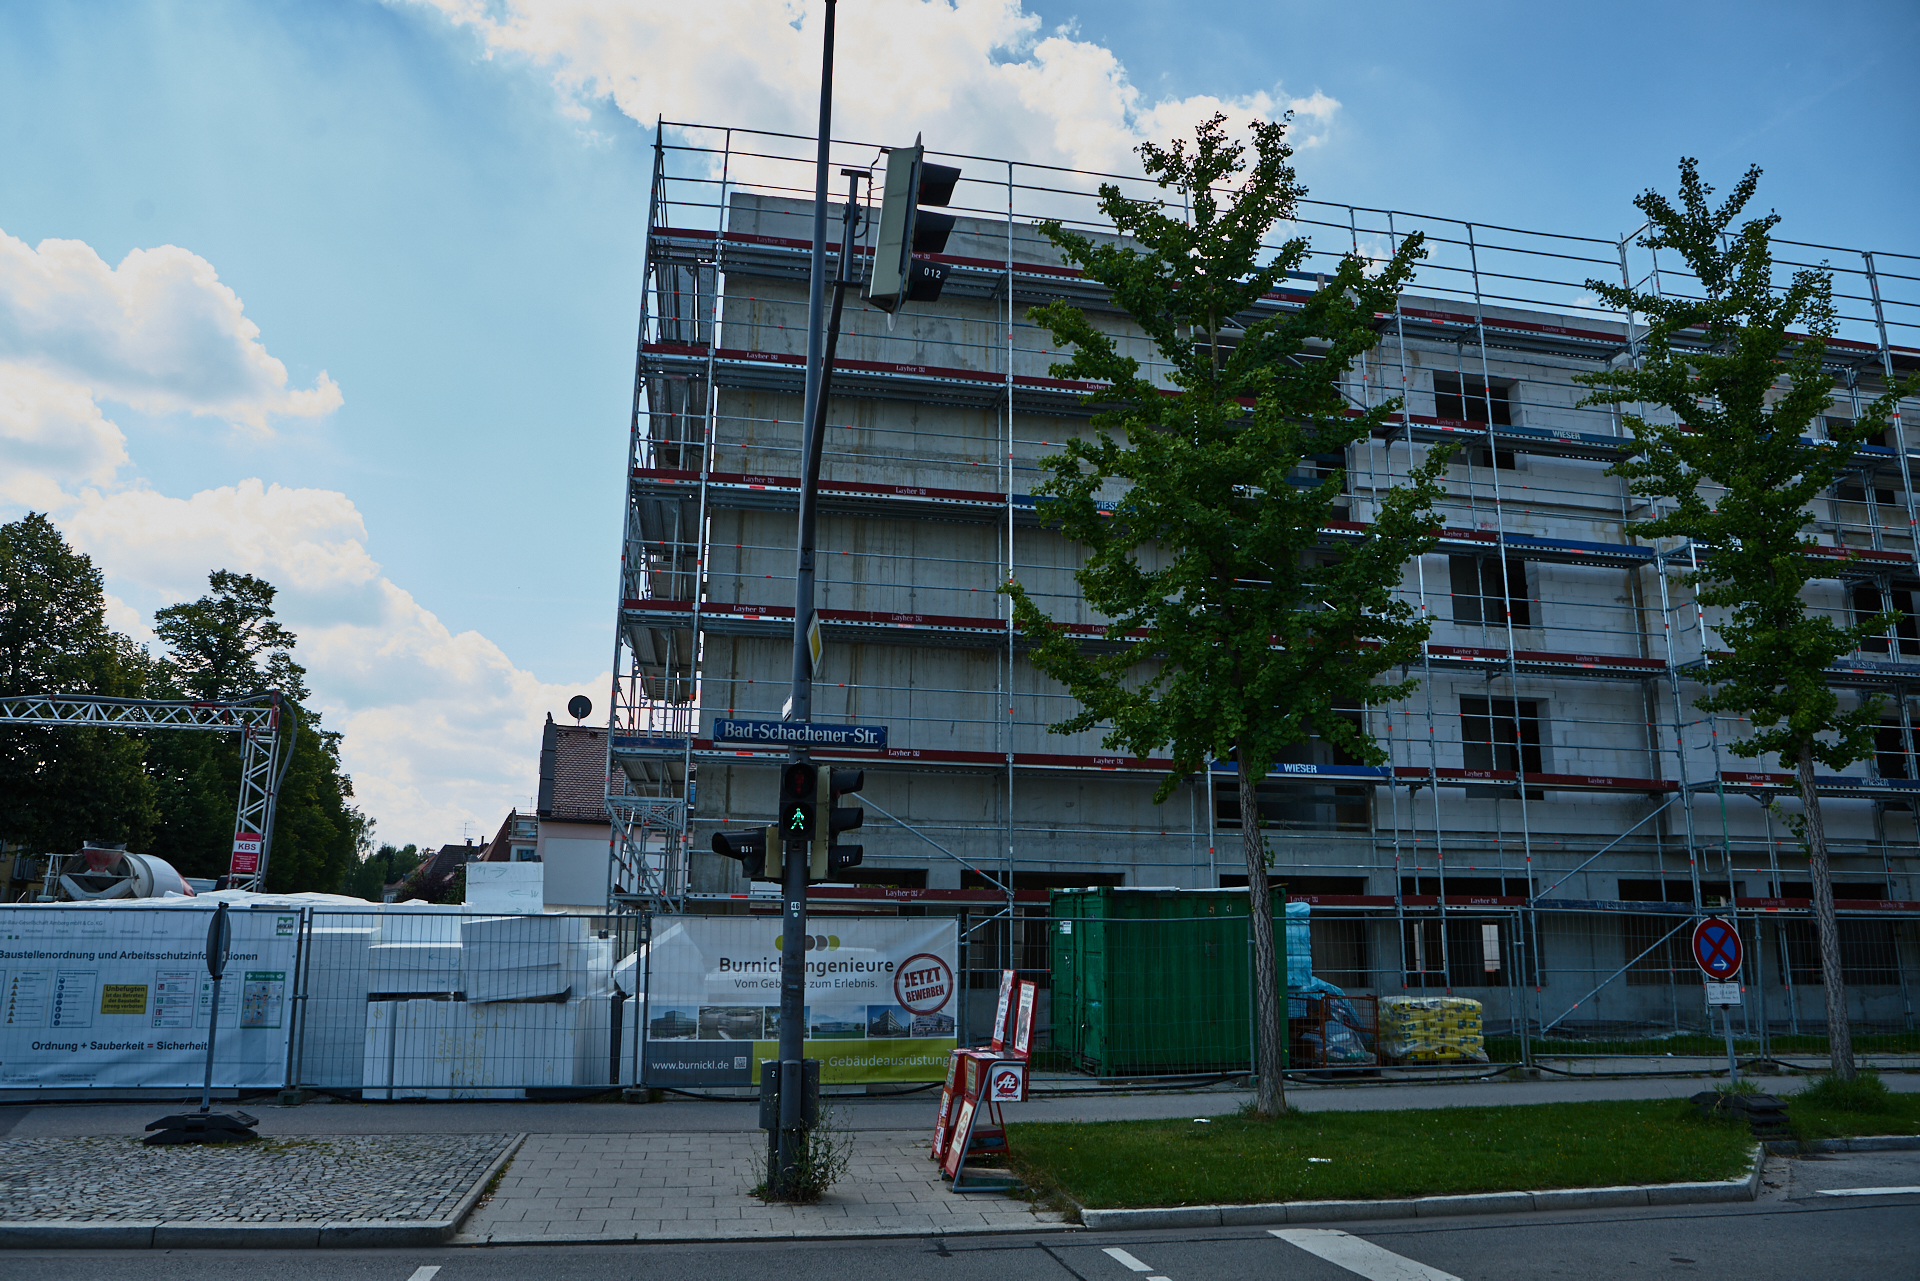 30.07.2018 - Baustelle Maikäfersiedlung in der Bad Schachener Straße in Neuperlach